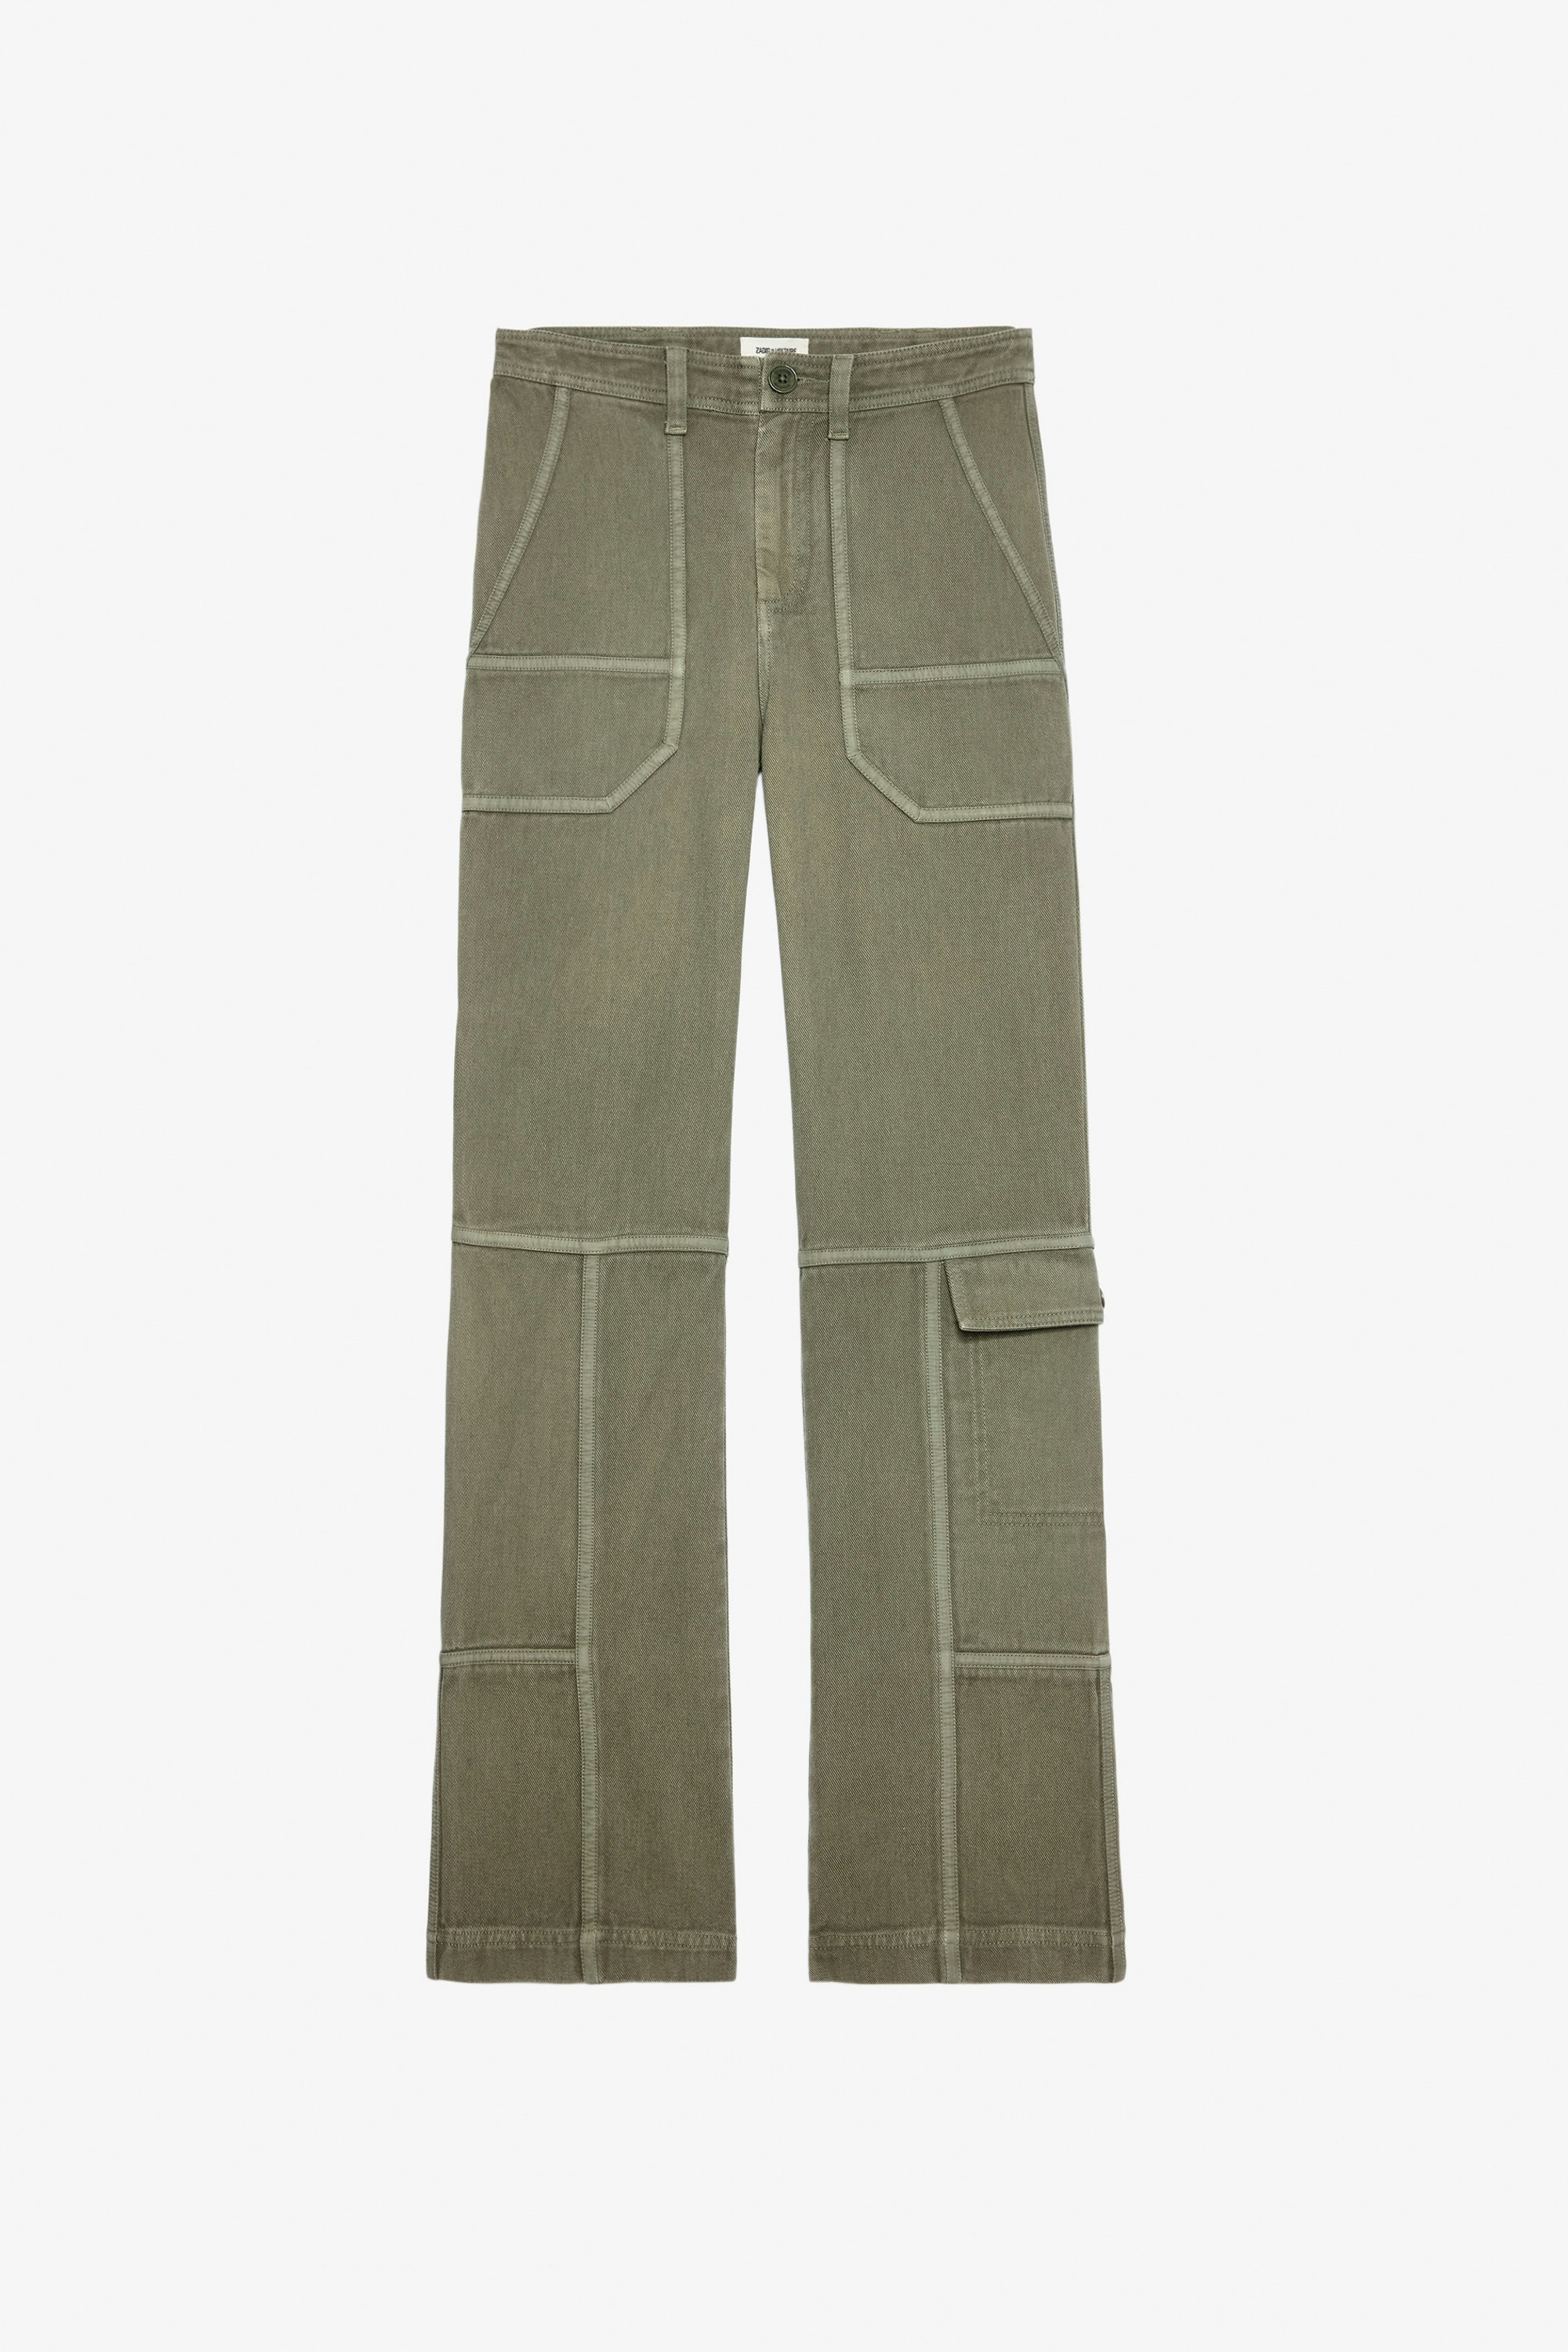 Pantalón Pepper - Pantalón de sarga de algodón en color caqui con detalles de contraste para mujer.